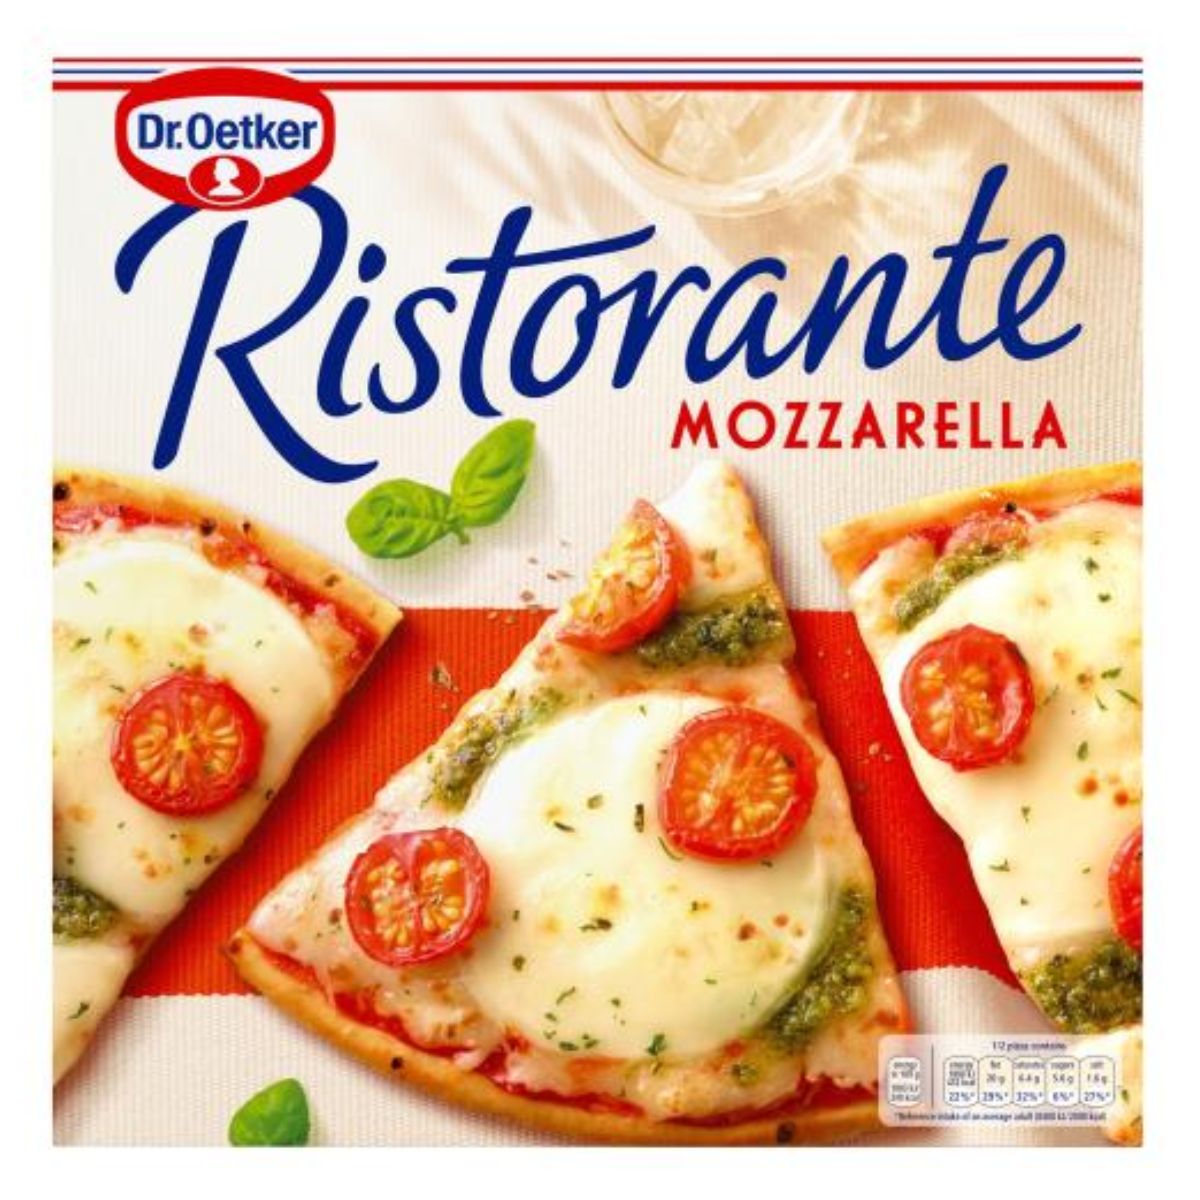 A box of Dr. Oetker - Ristorante Pizza Mozzarella - 335g.